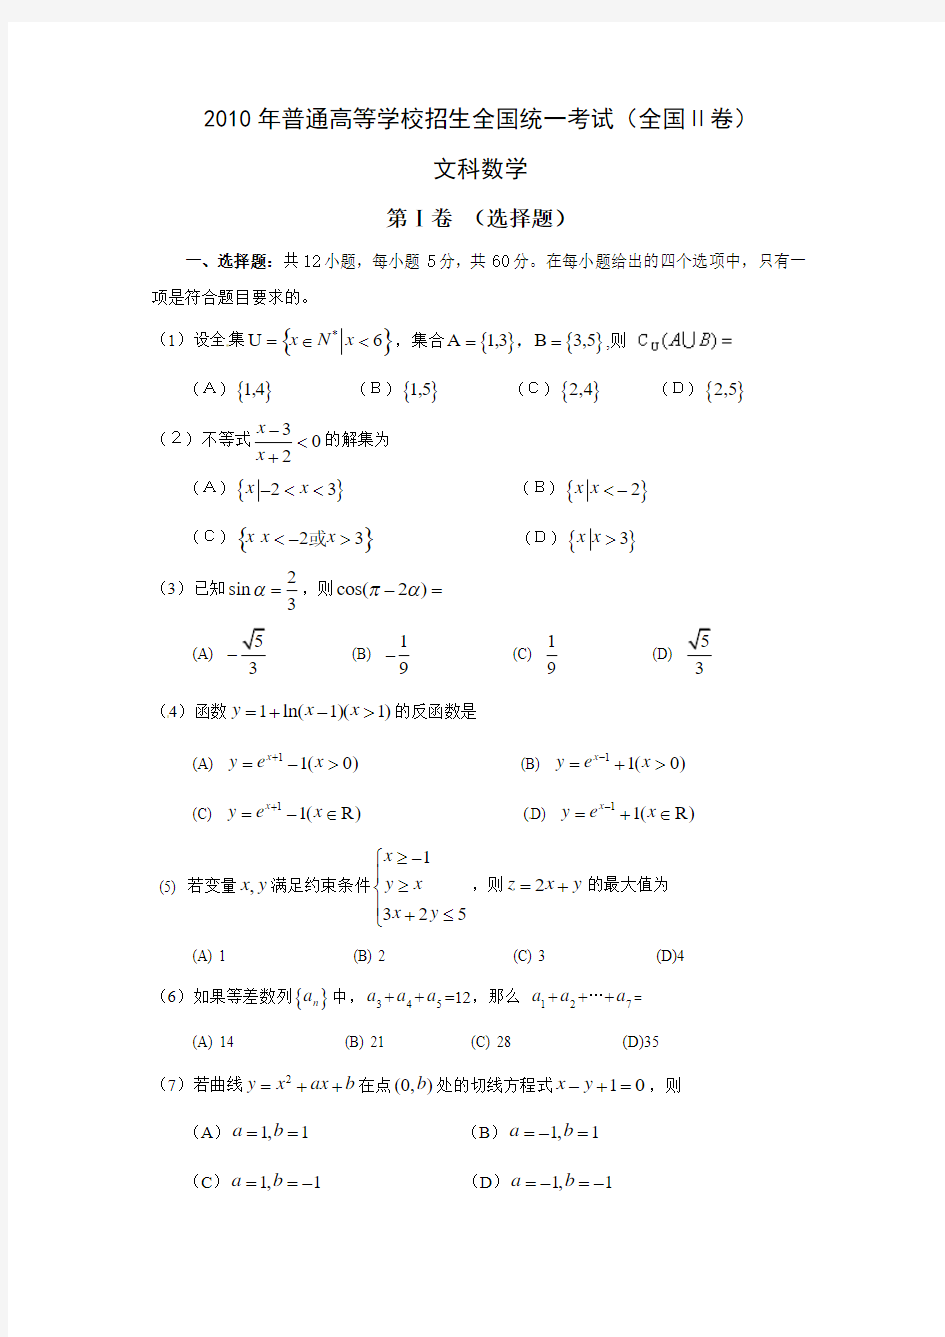 2010年高考文科数学(全国)卷(Ⅱ)